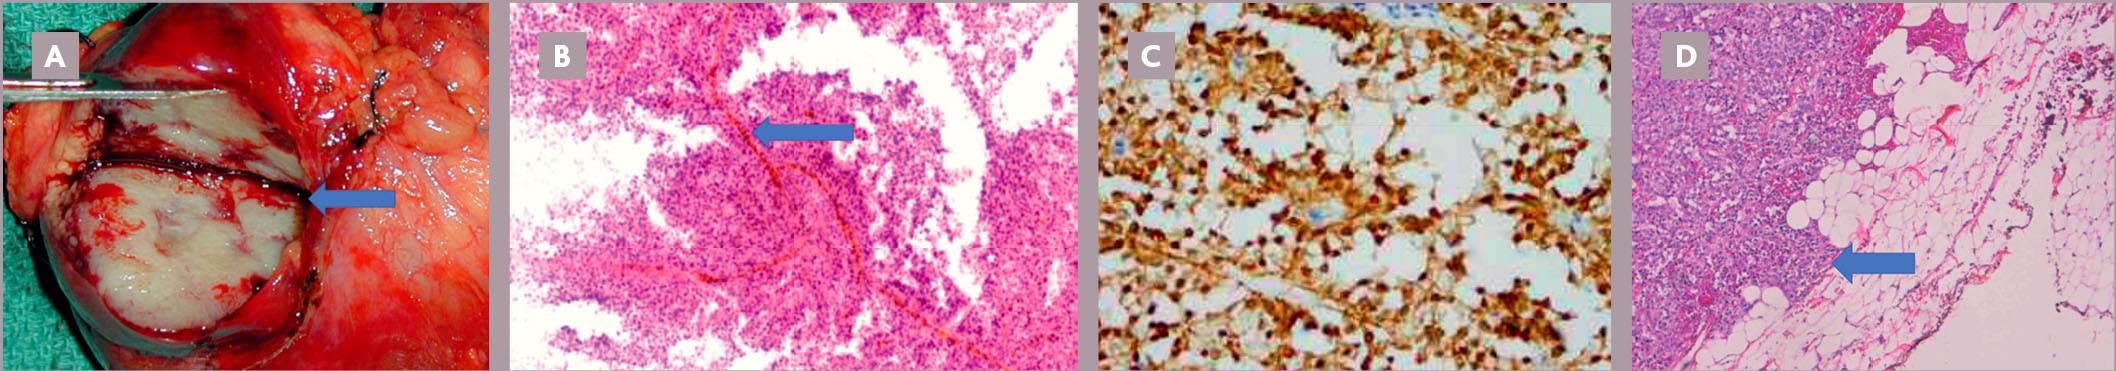 Tumeur pancréatique rare de la jeune fille : la tumeur pseudopapillaire et solide du pancréas ou tumeur de Frantz - Figure 5